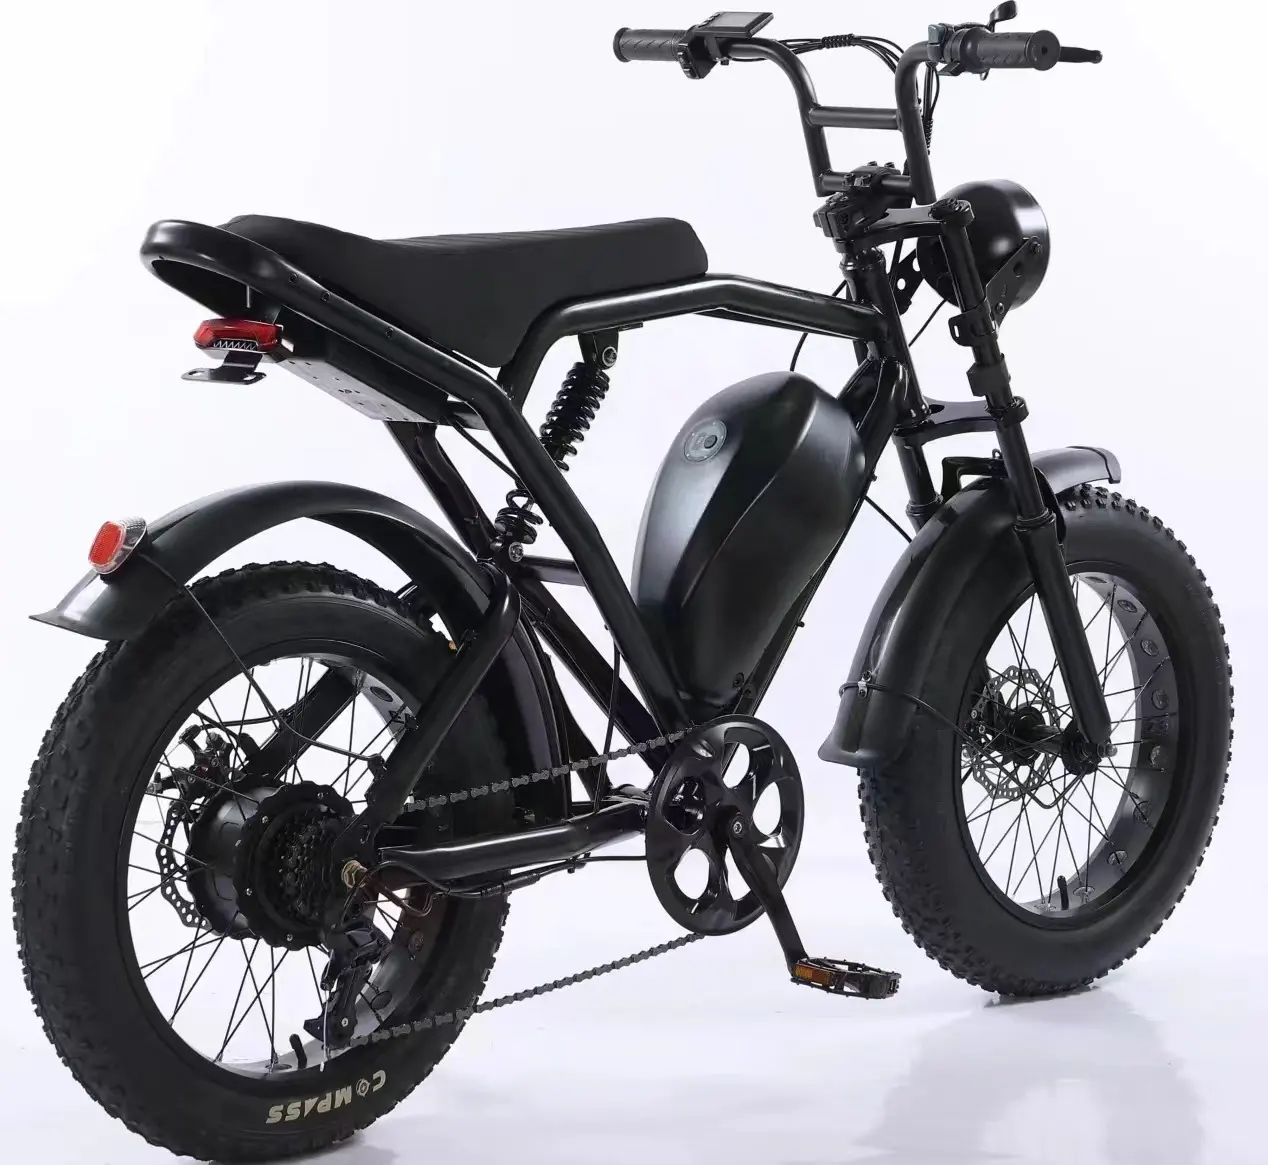 Vente chaude HaLie 20 pouces gros pneu E-bike 350w vélo électrique urbain 25 km/h Fatbike adulte